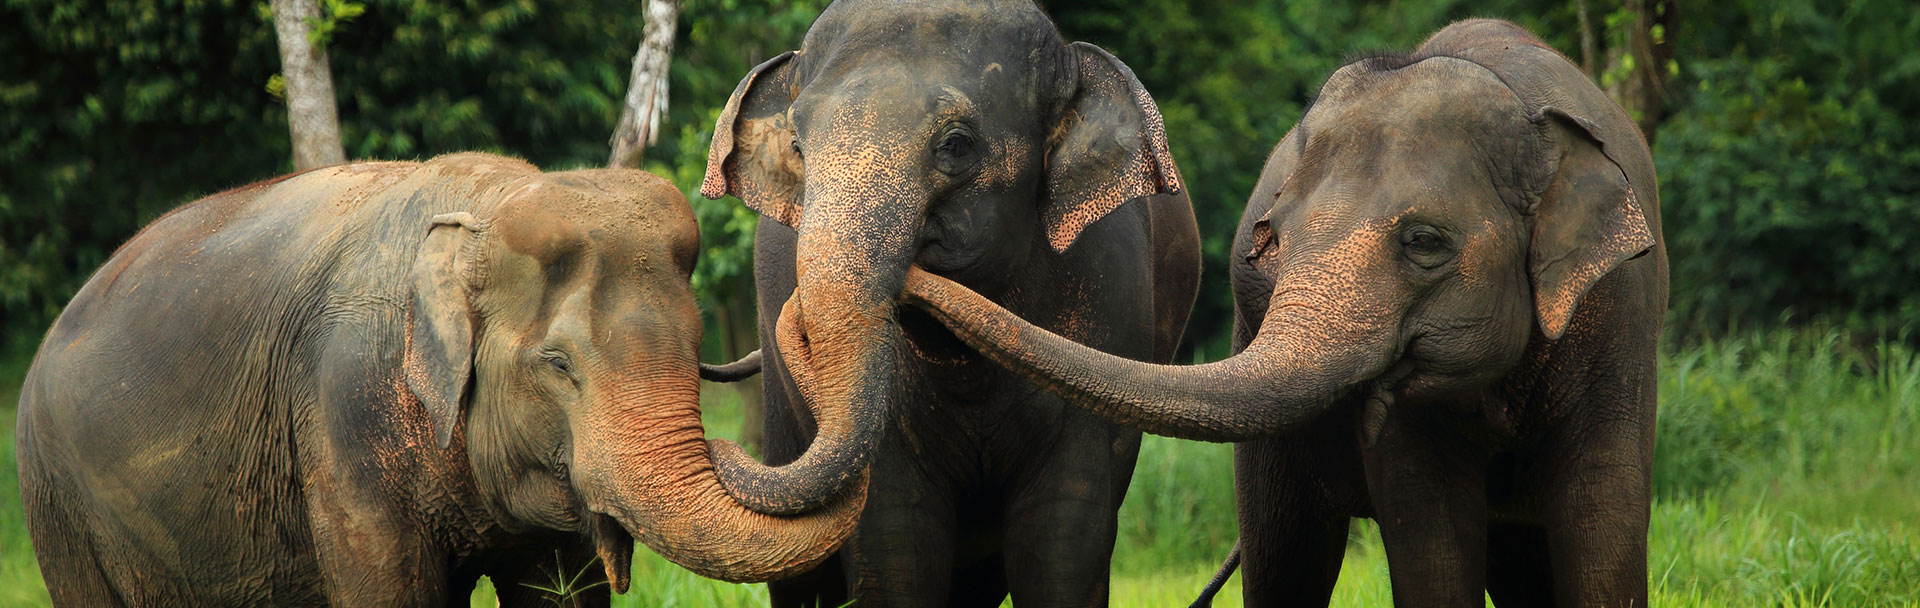 Admire the Elephants at Elephant Hills Khao Sok